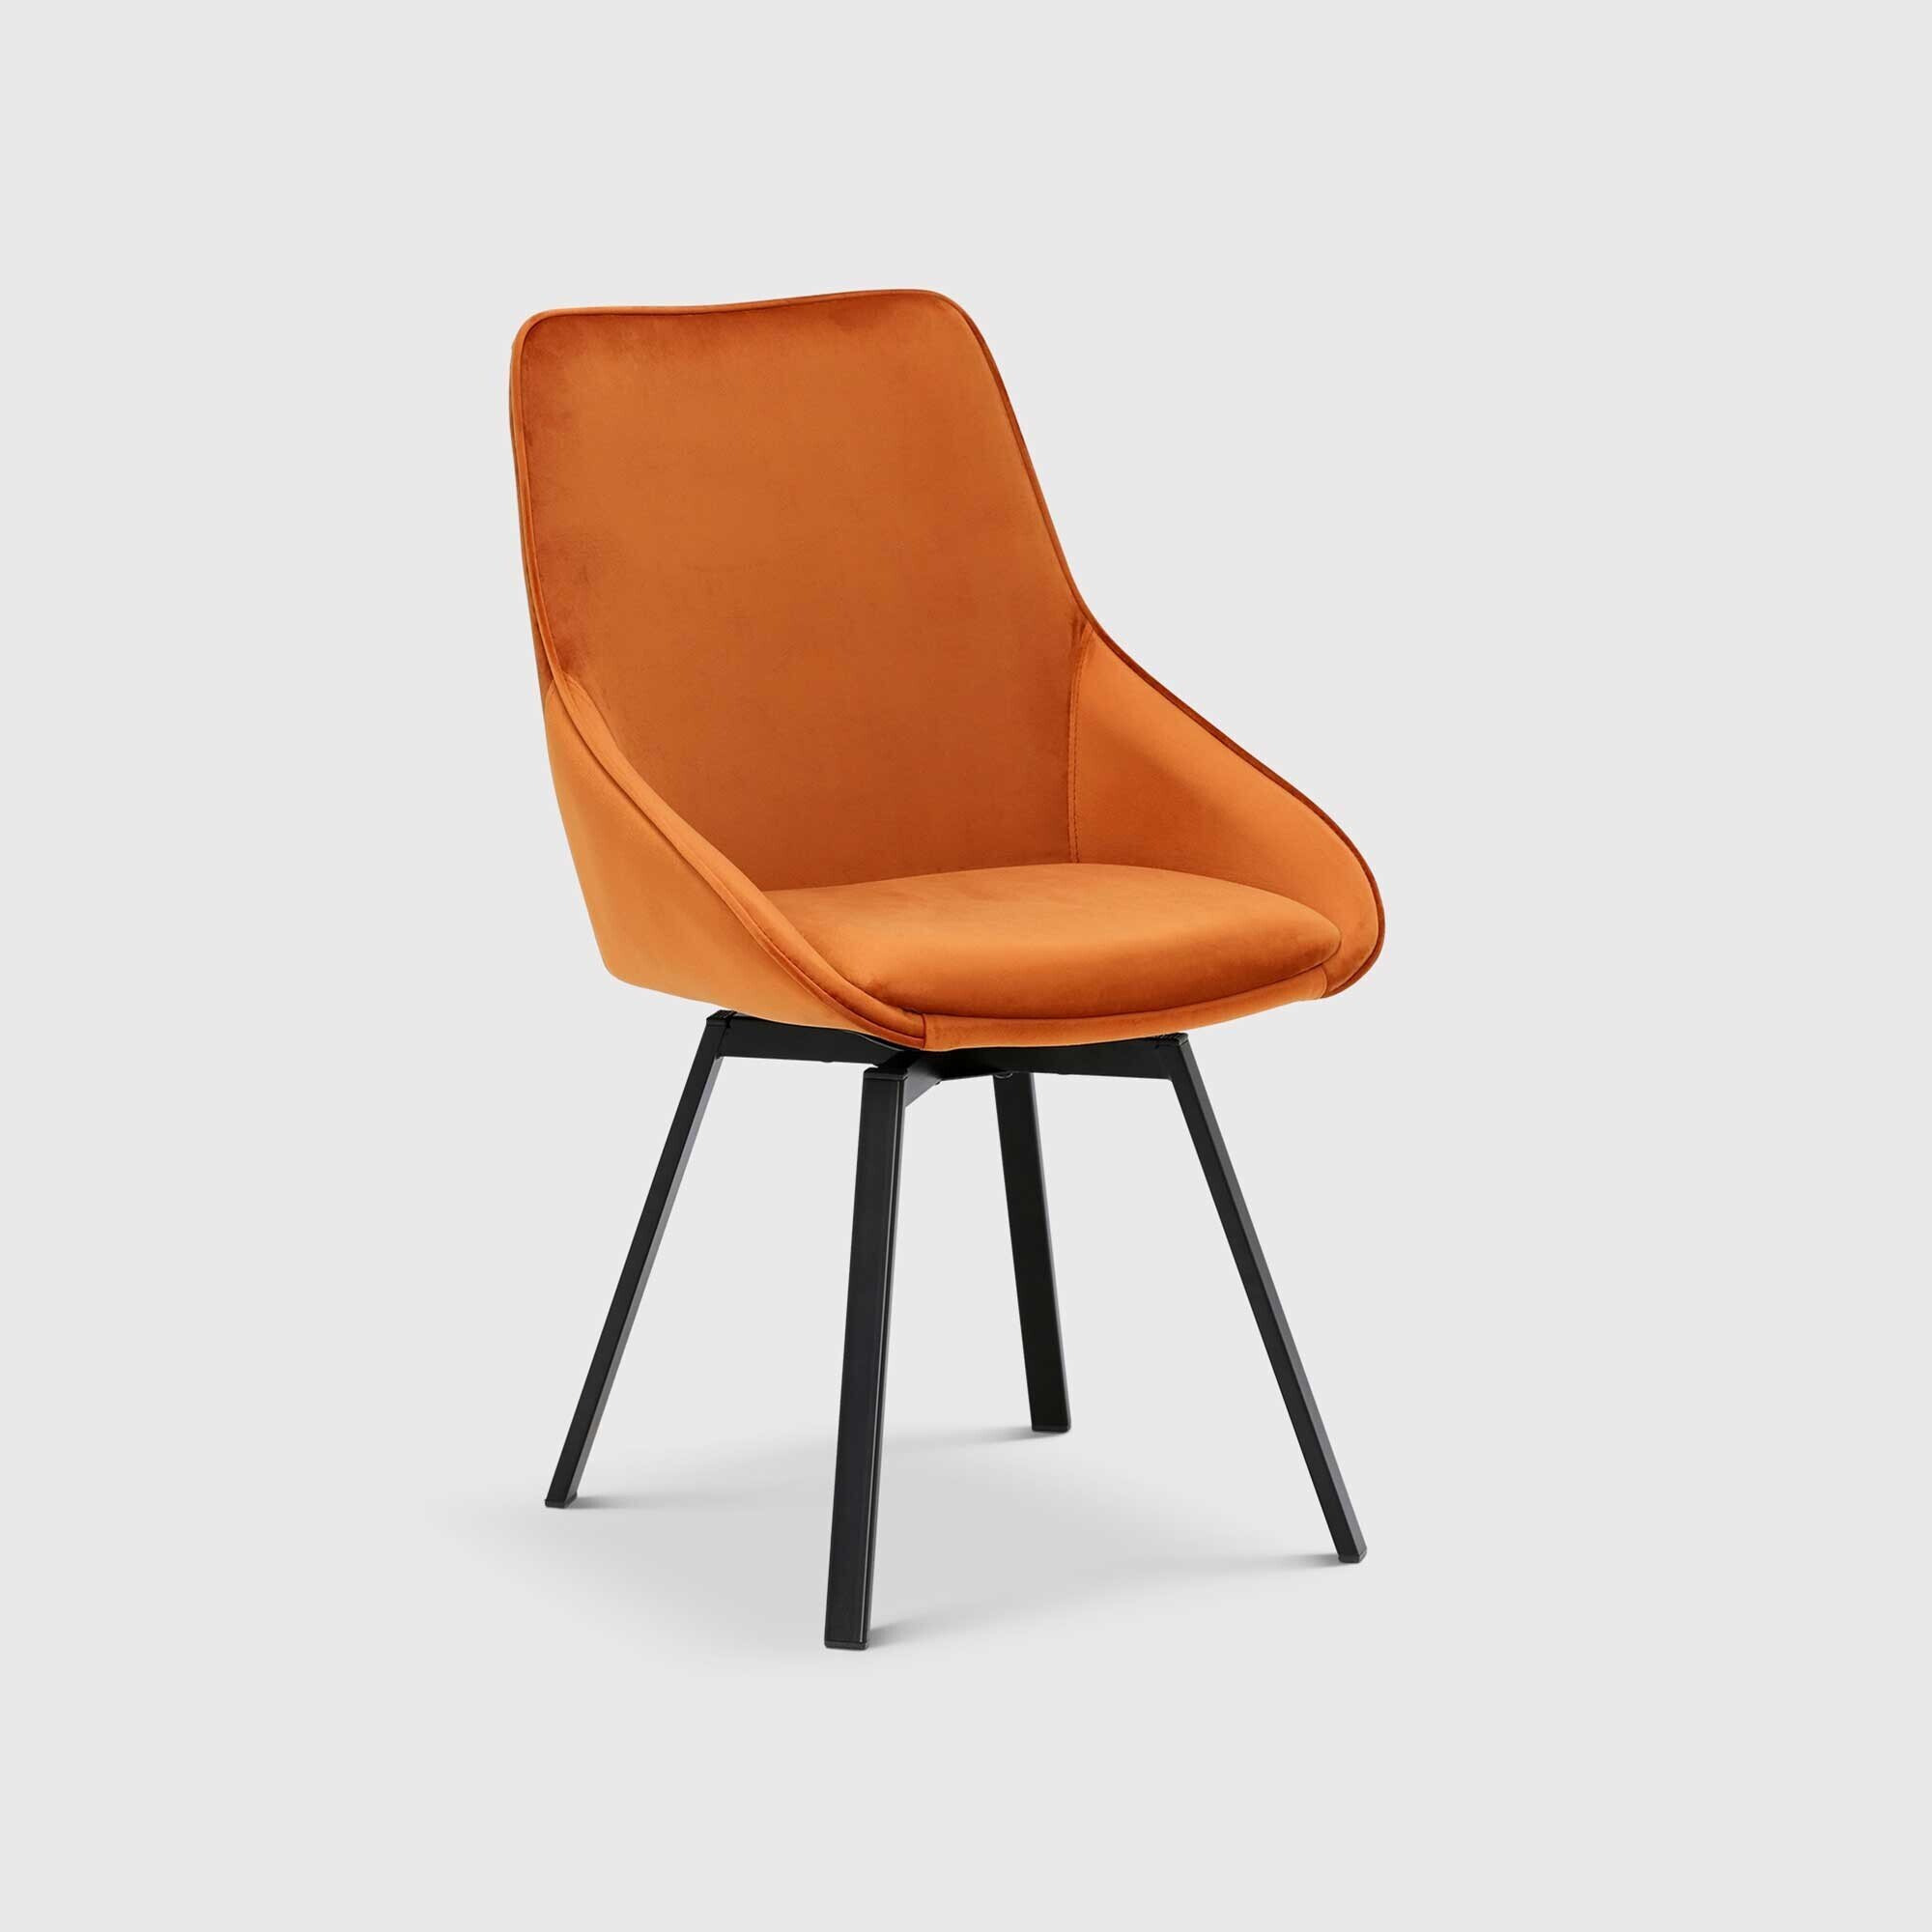 Beckton Leisure Swivel Dining Chair, Orange Velvet - Barker & Stonehouse - image 1